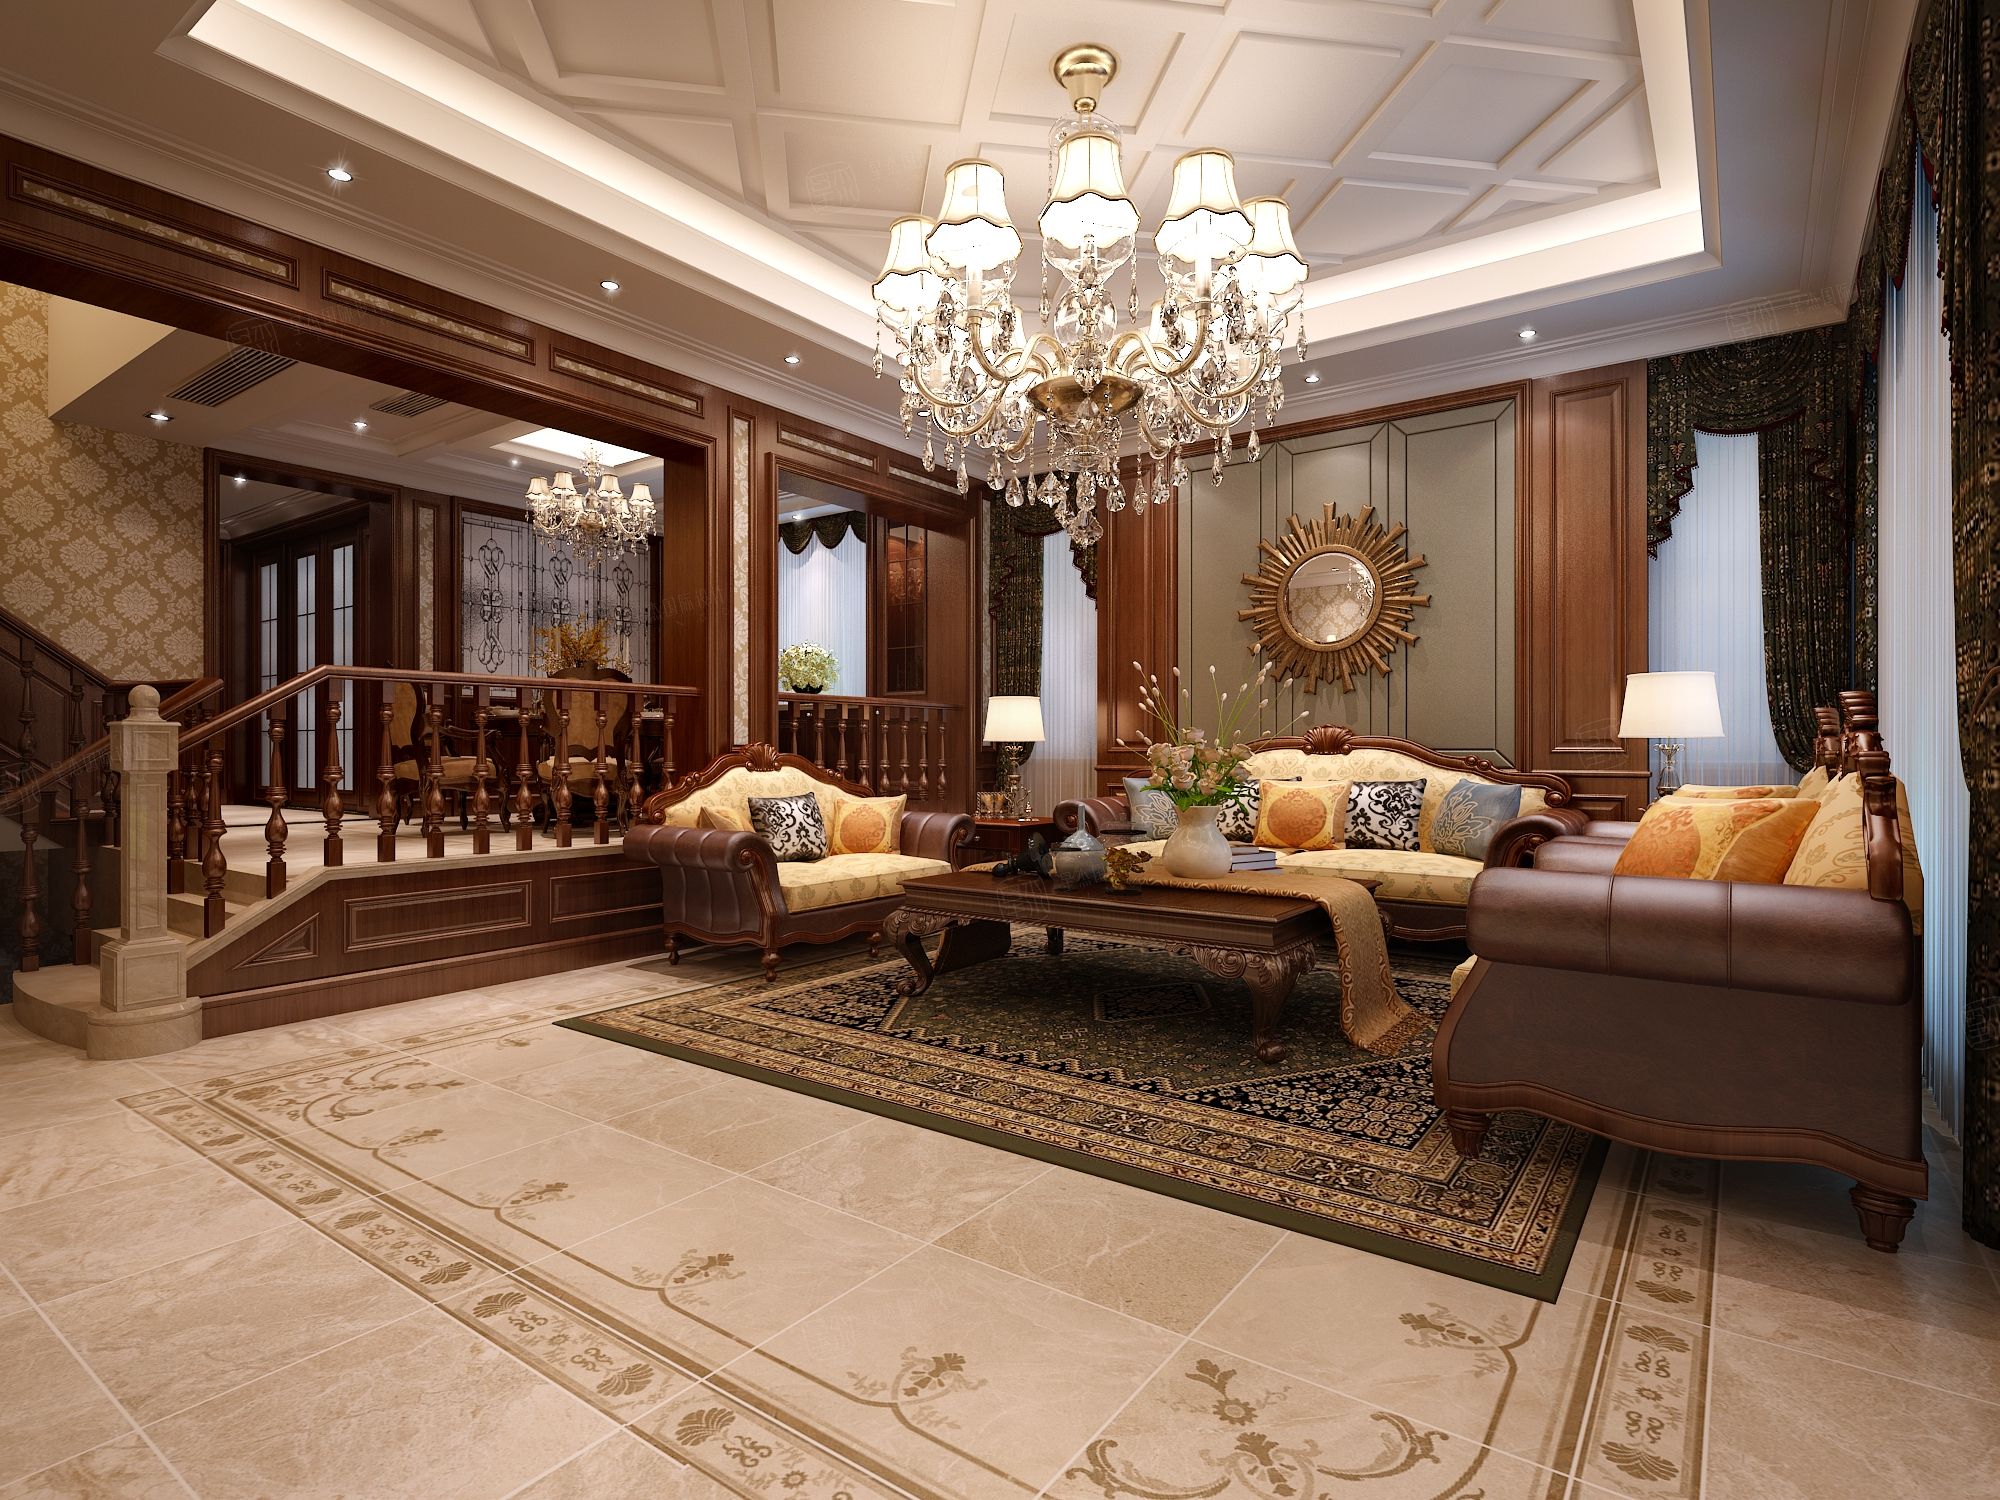 新古典别墅室内挑空客厅设计 – 设计本装修效果图